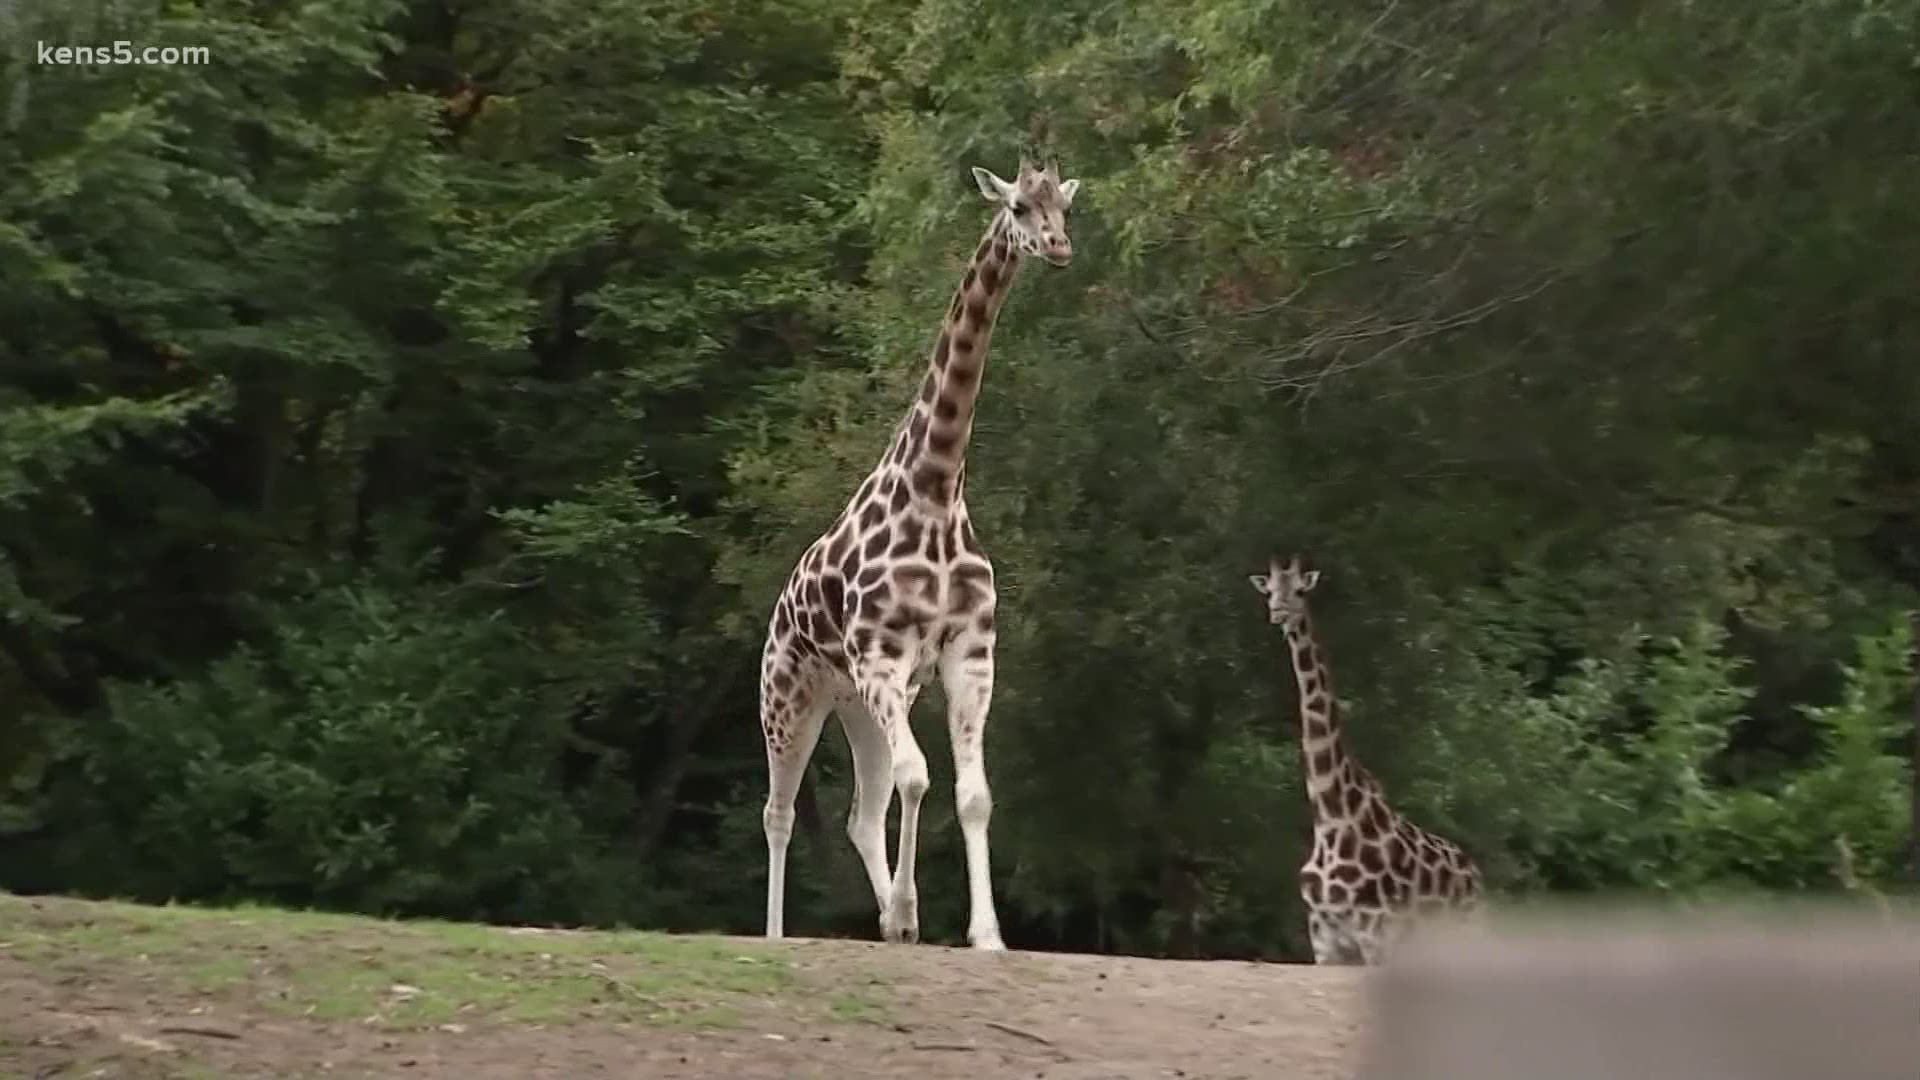 Giraffe given special shoes so he can walk, run 